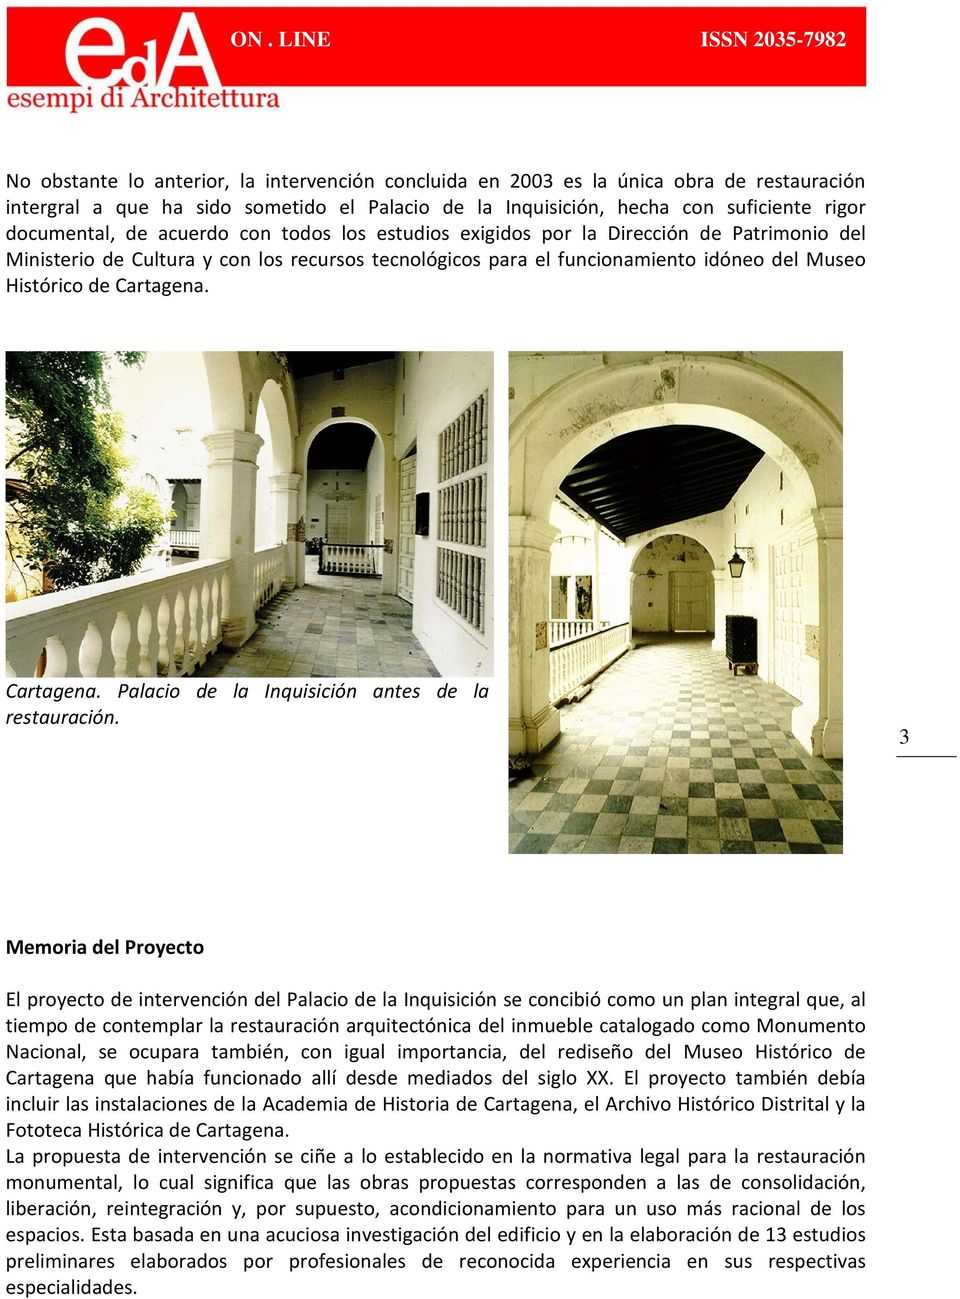 Cartagena. Palacio de la Inquisición antes de la restauración.